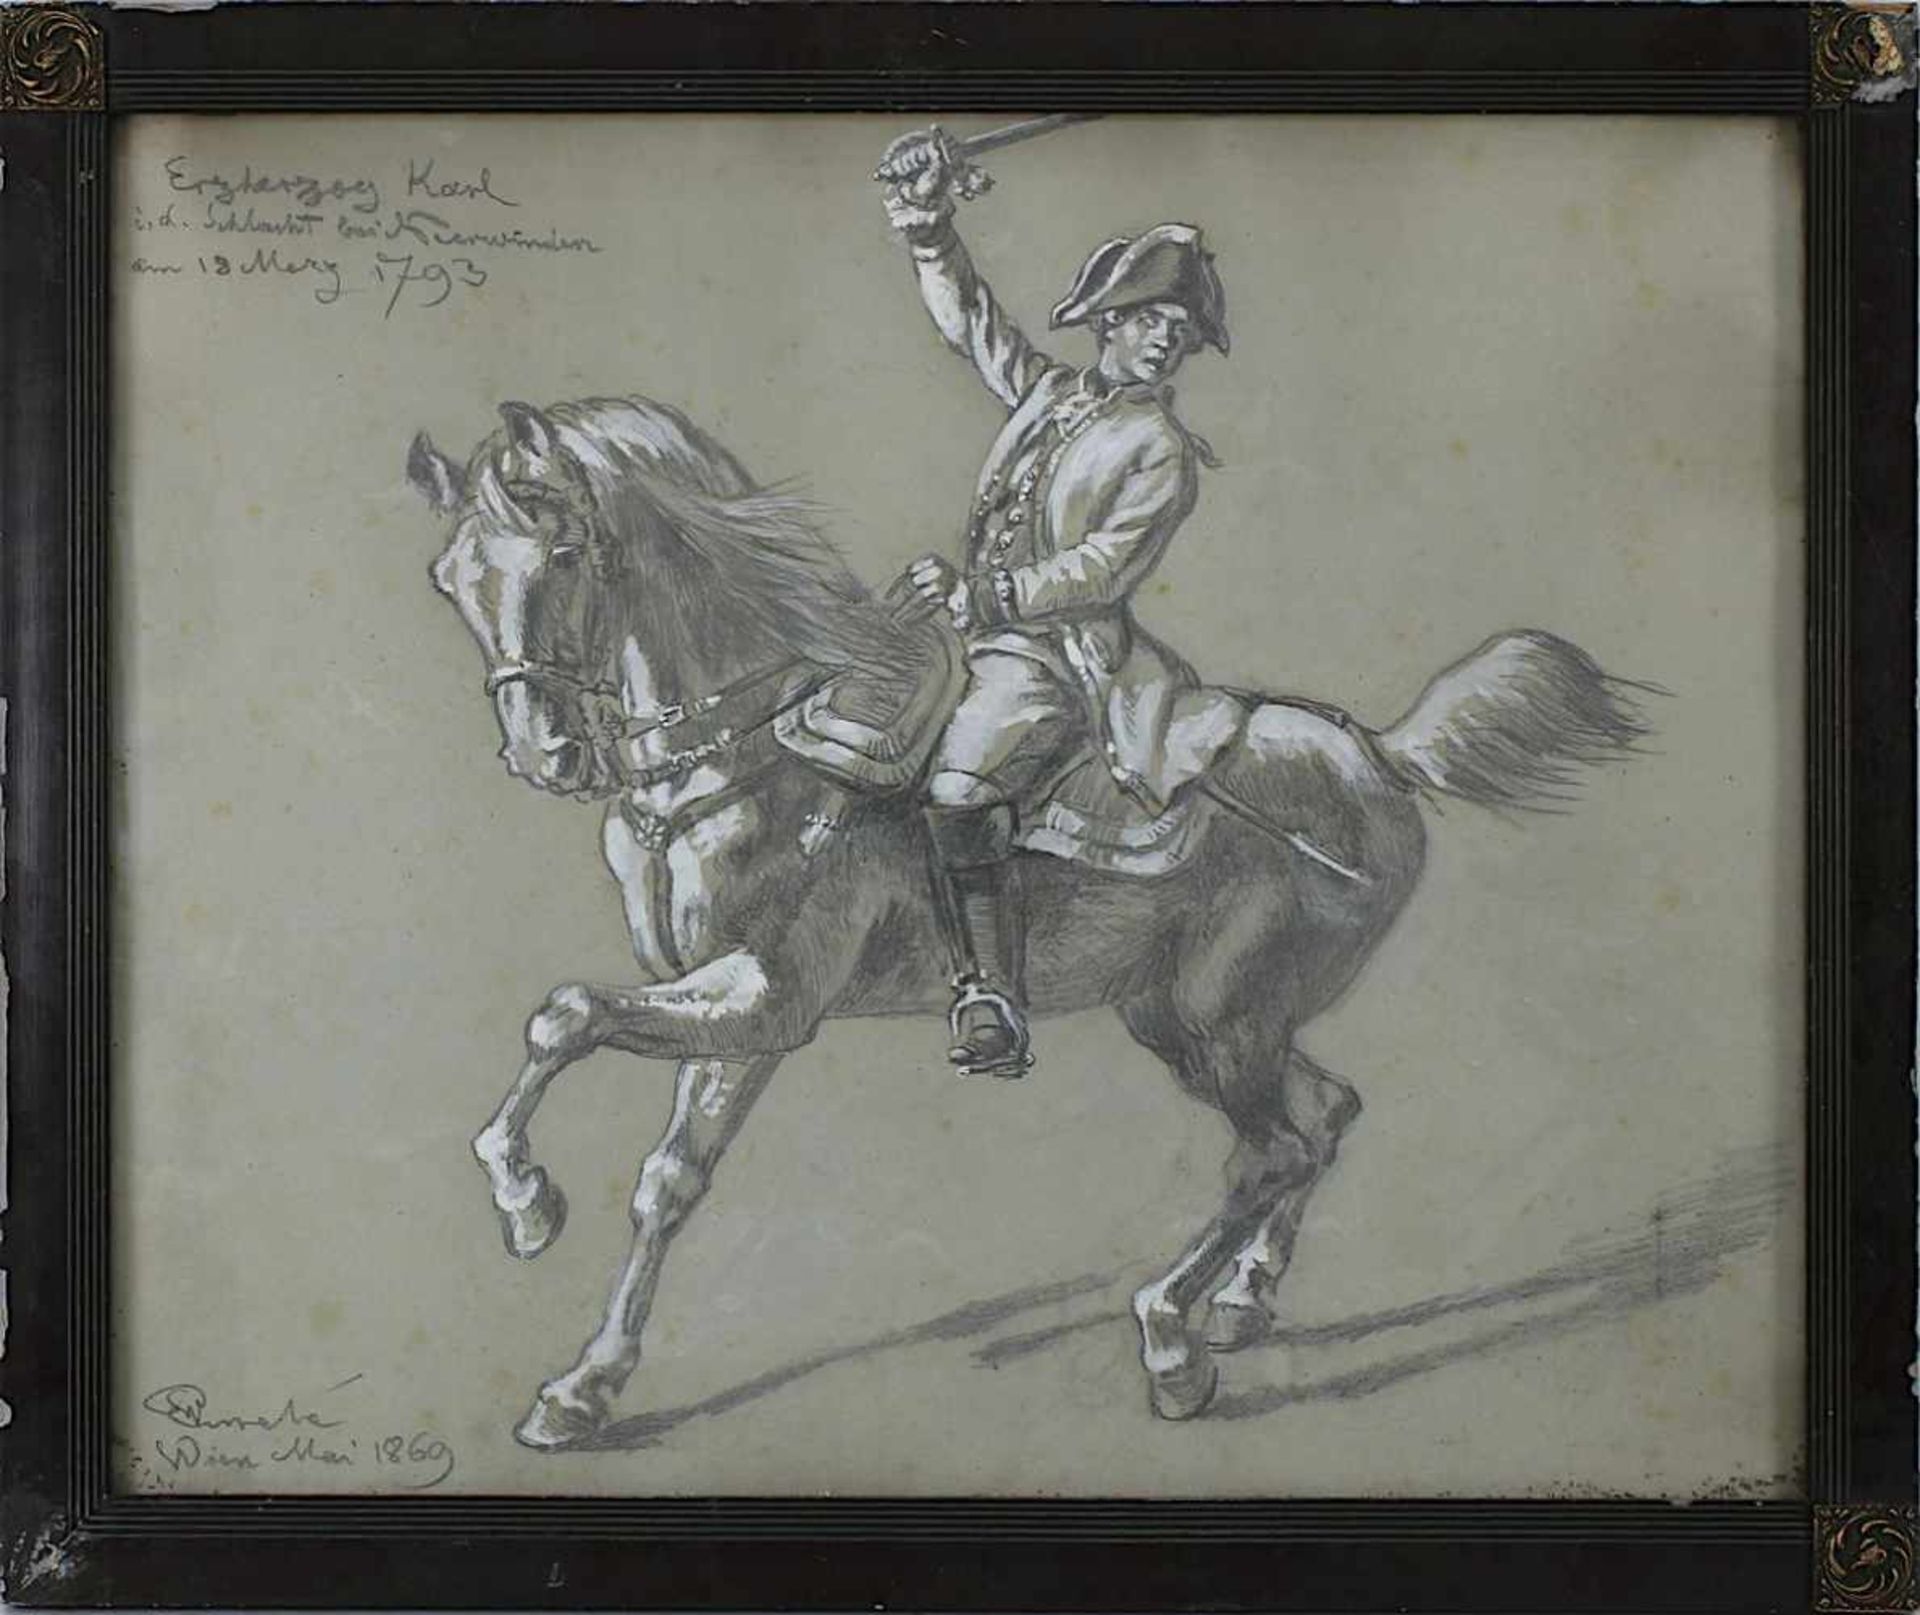 Emelé, Wilhelm (Buchen 1830 - 1905 Freiburg), "Erzherzog Karl in der Schlacht bei Neerwinden", am